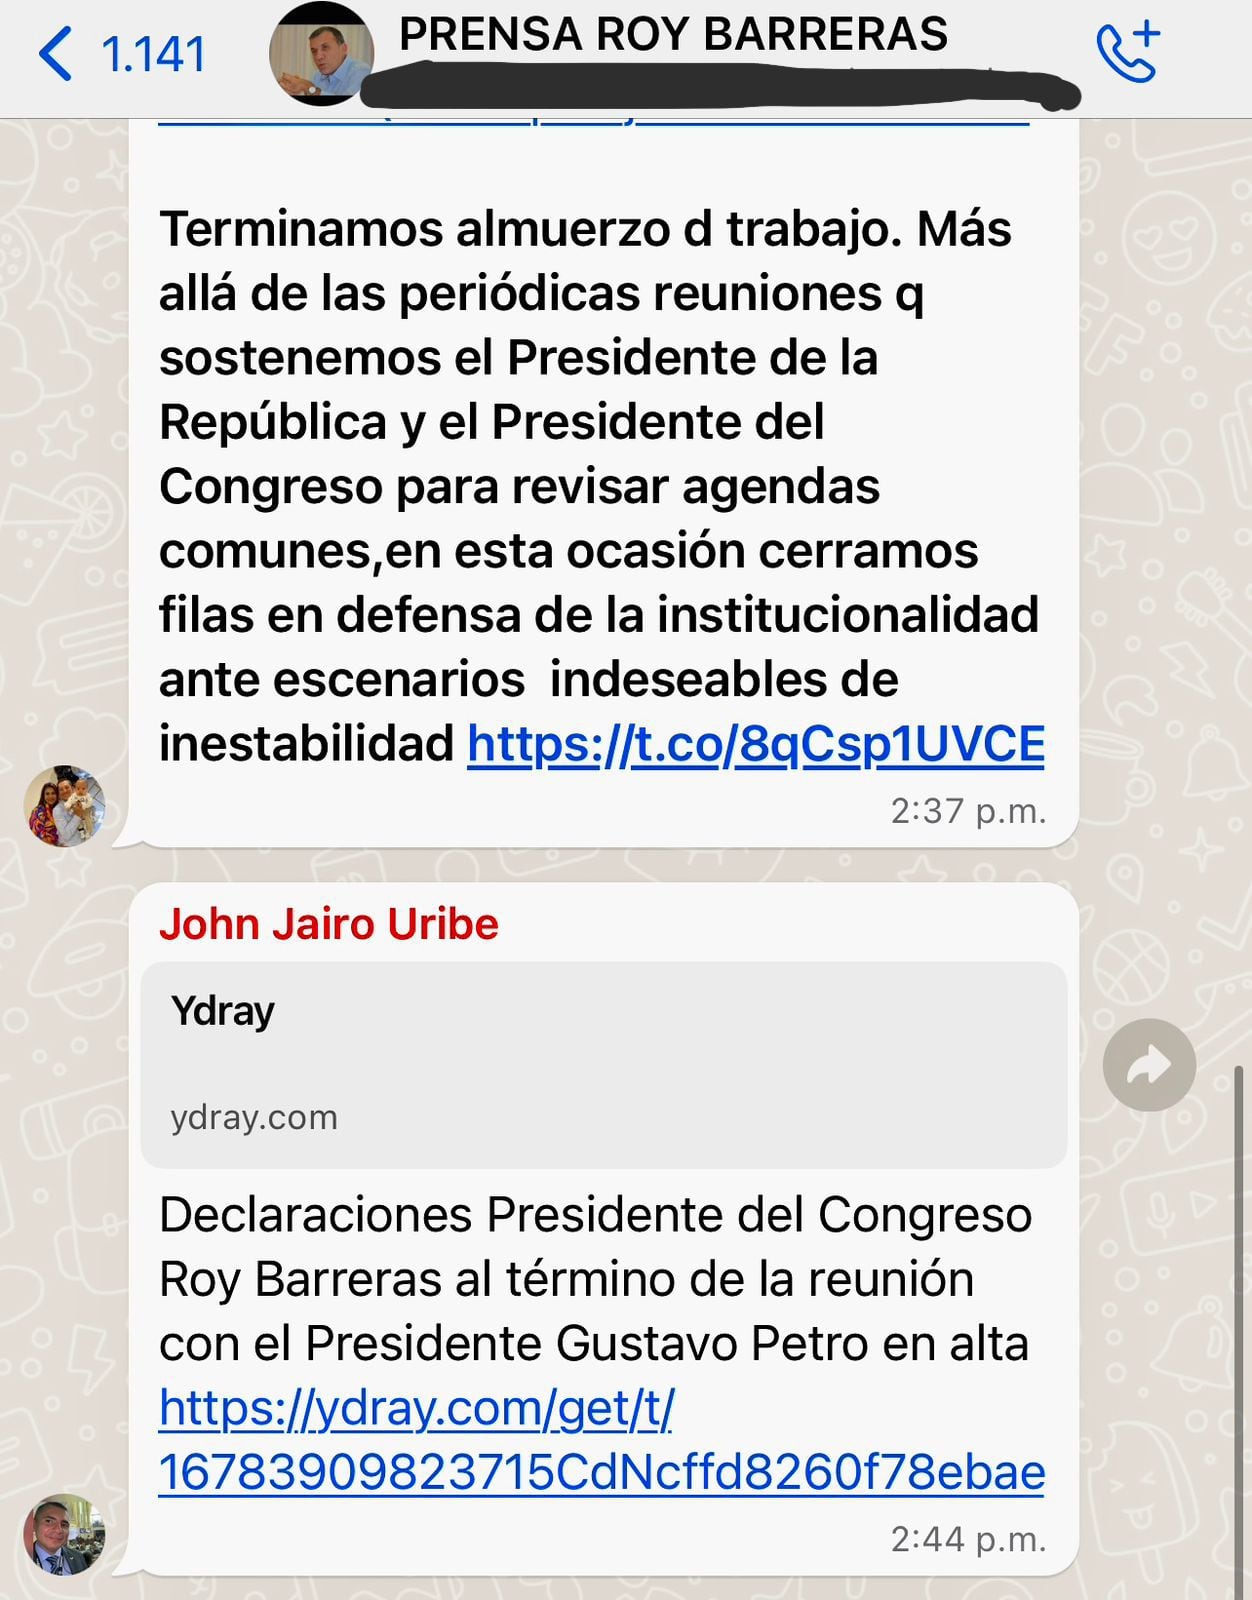 John Jairo Uribe es el encargado de difundir el material en video de las declaraciones de Roy Barreras.